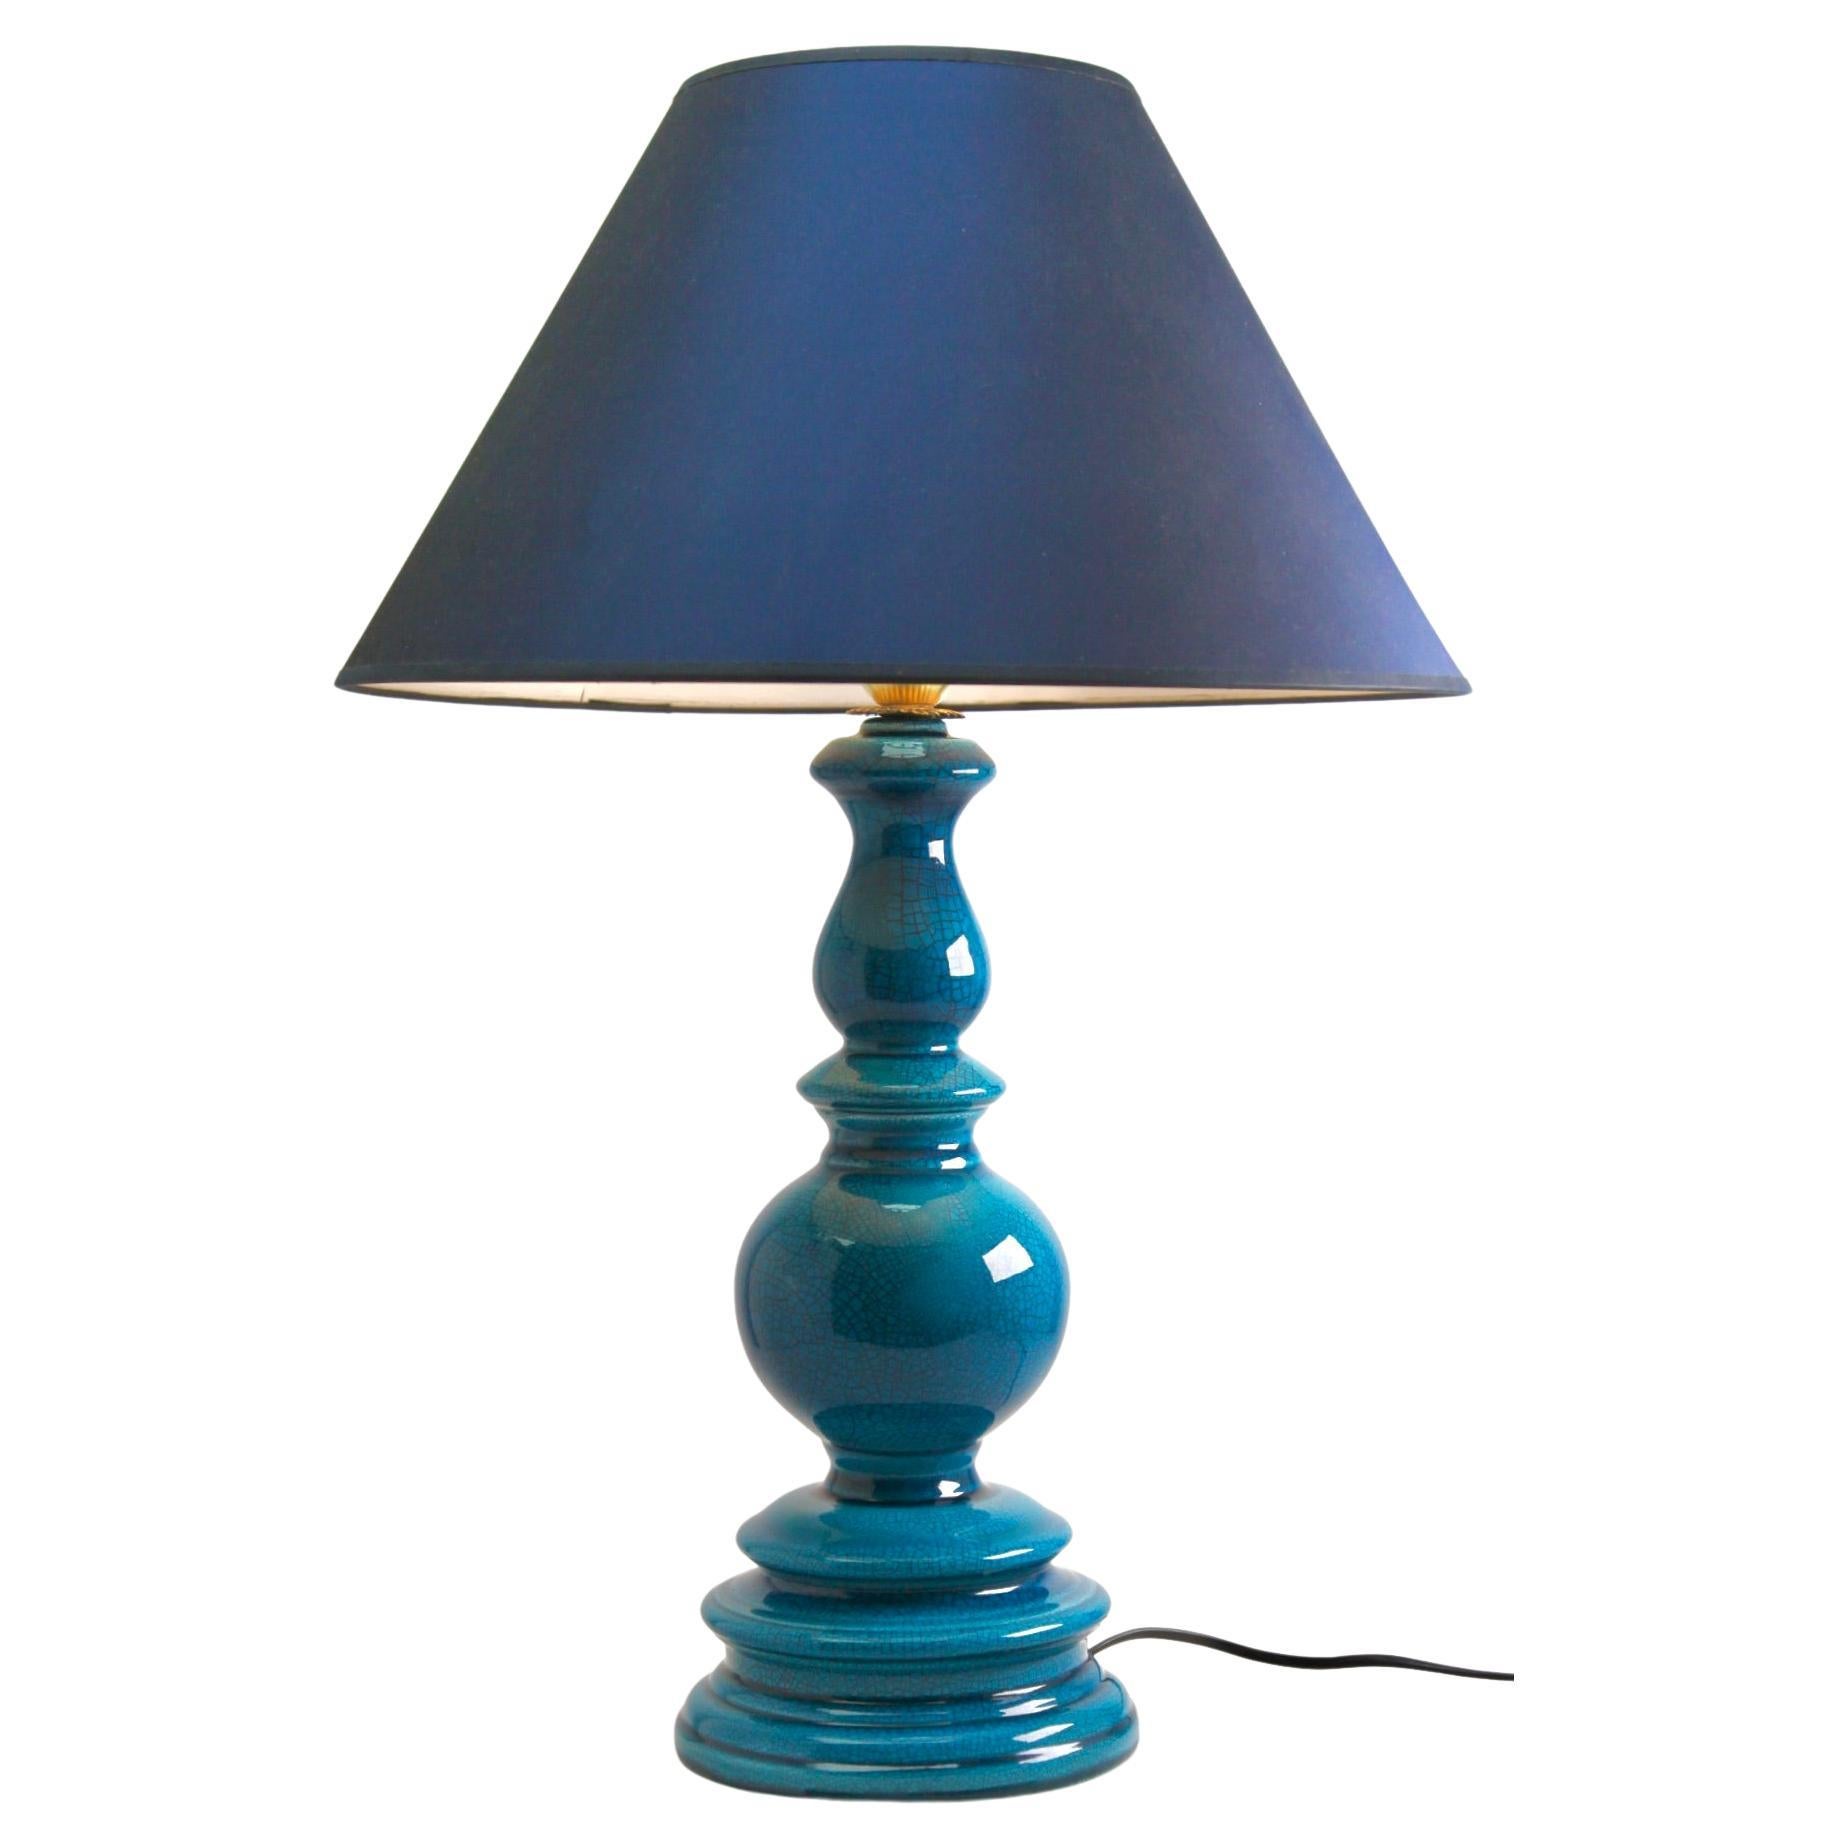 Turquoise Glazed Large Chinese Ceramic Table Lamp with Crackle Glaze